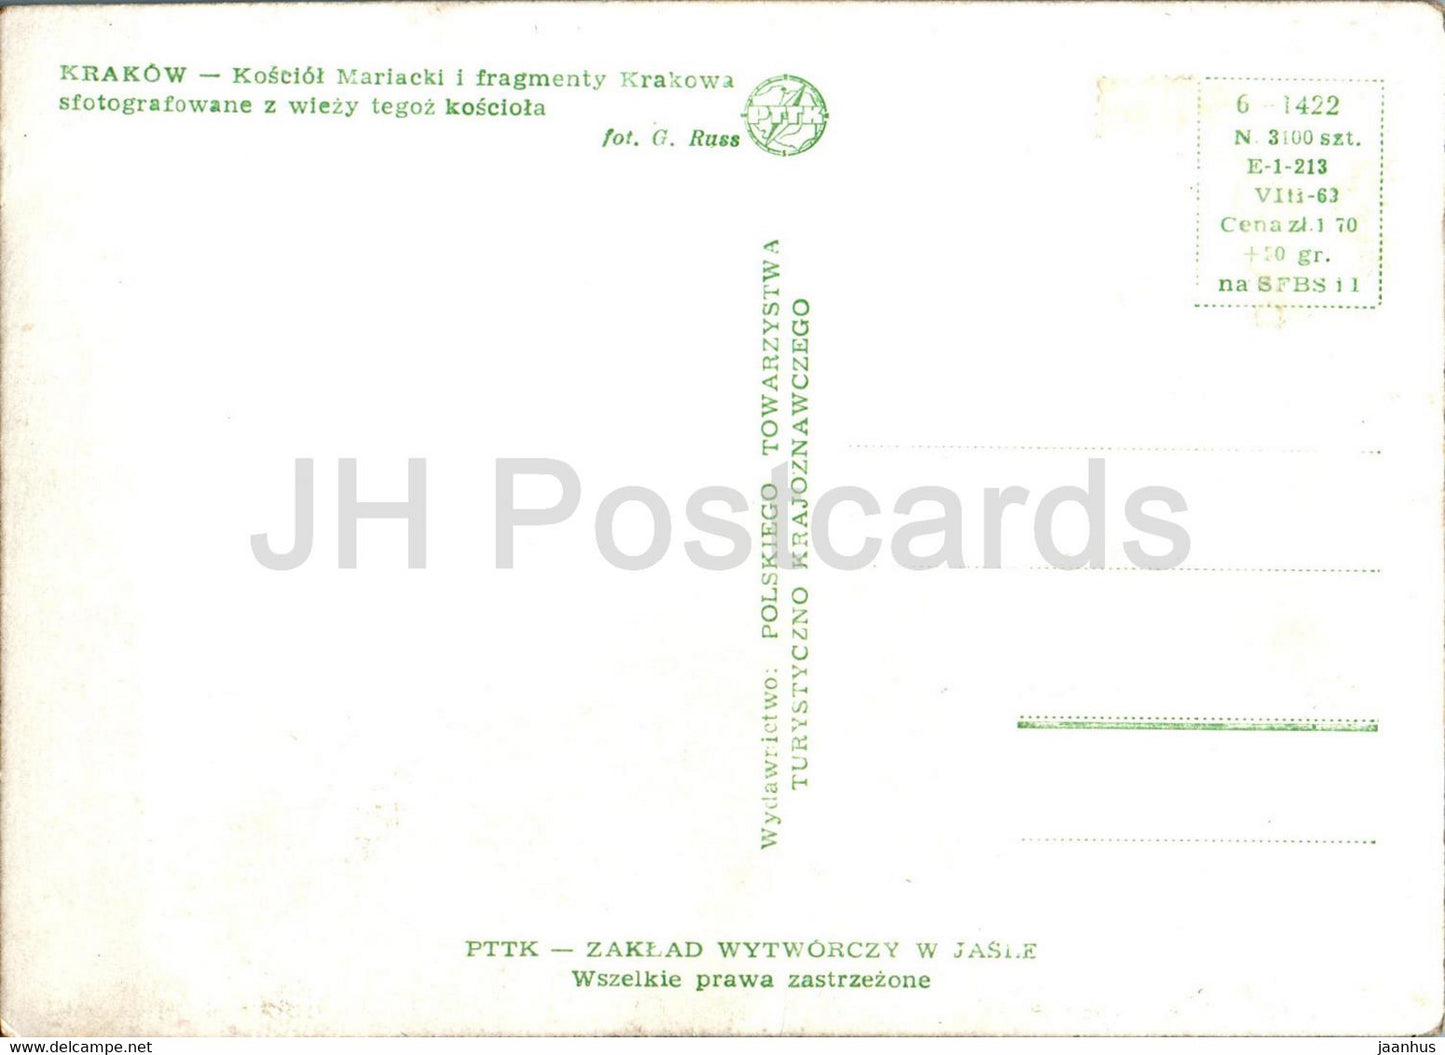 Krakow - Kosciol Mariacki - multiview - old postcard - Poland - unused